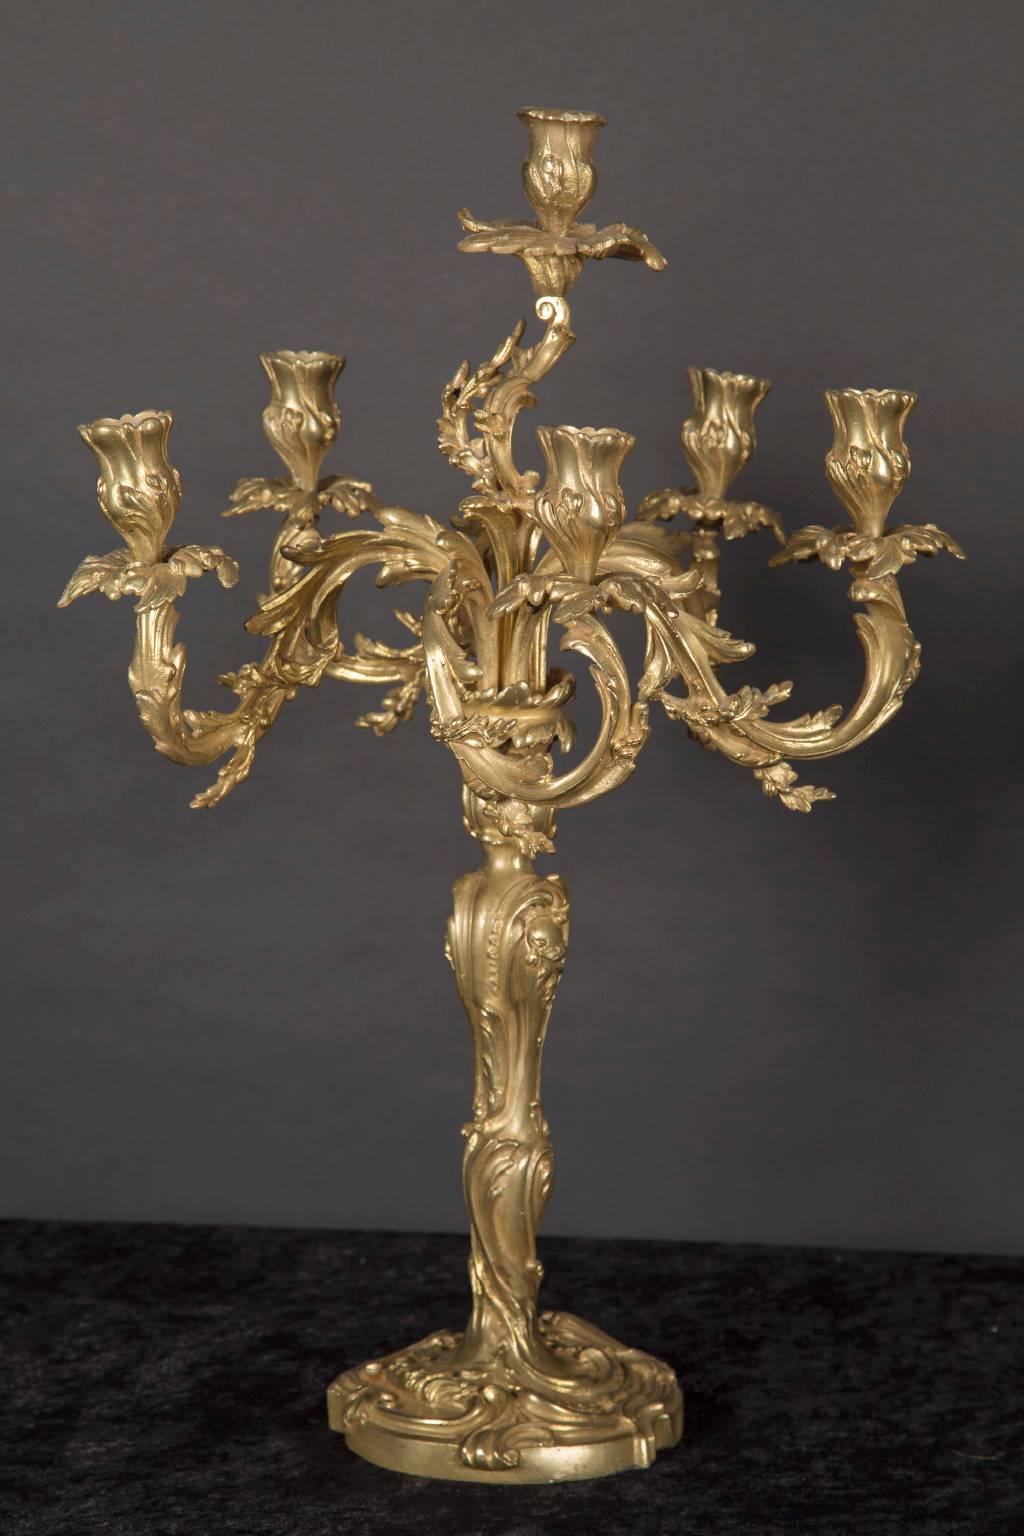 Cette grande paire de candélabres en bronze d'oré présente des coupes de bougie fleuries, des bobèches de feuilles et des bras dans le style rococo classique. La paire d'antiquités françaises date du 19e siècle et présente une tige et un pied